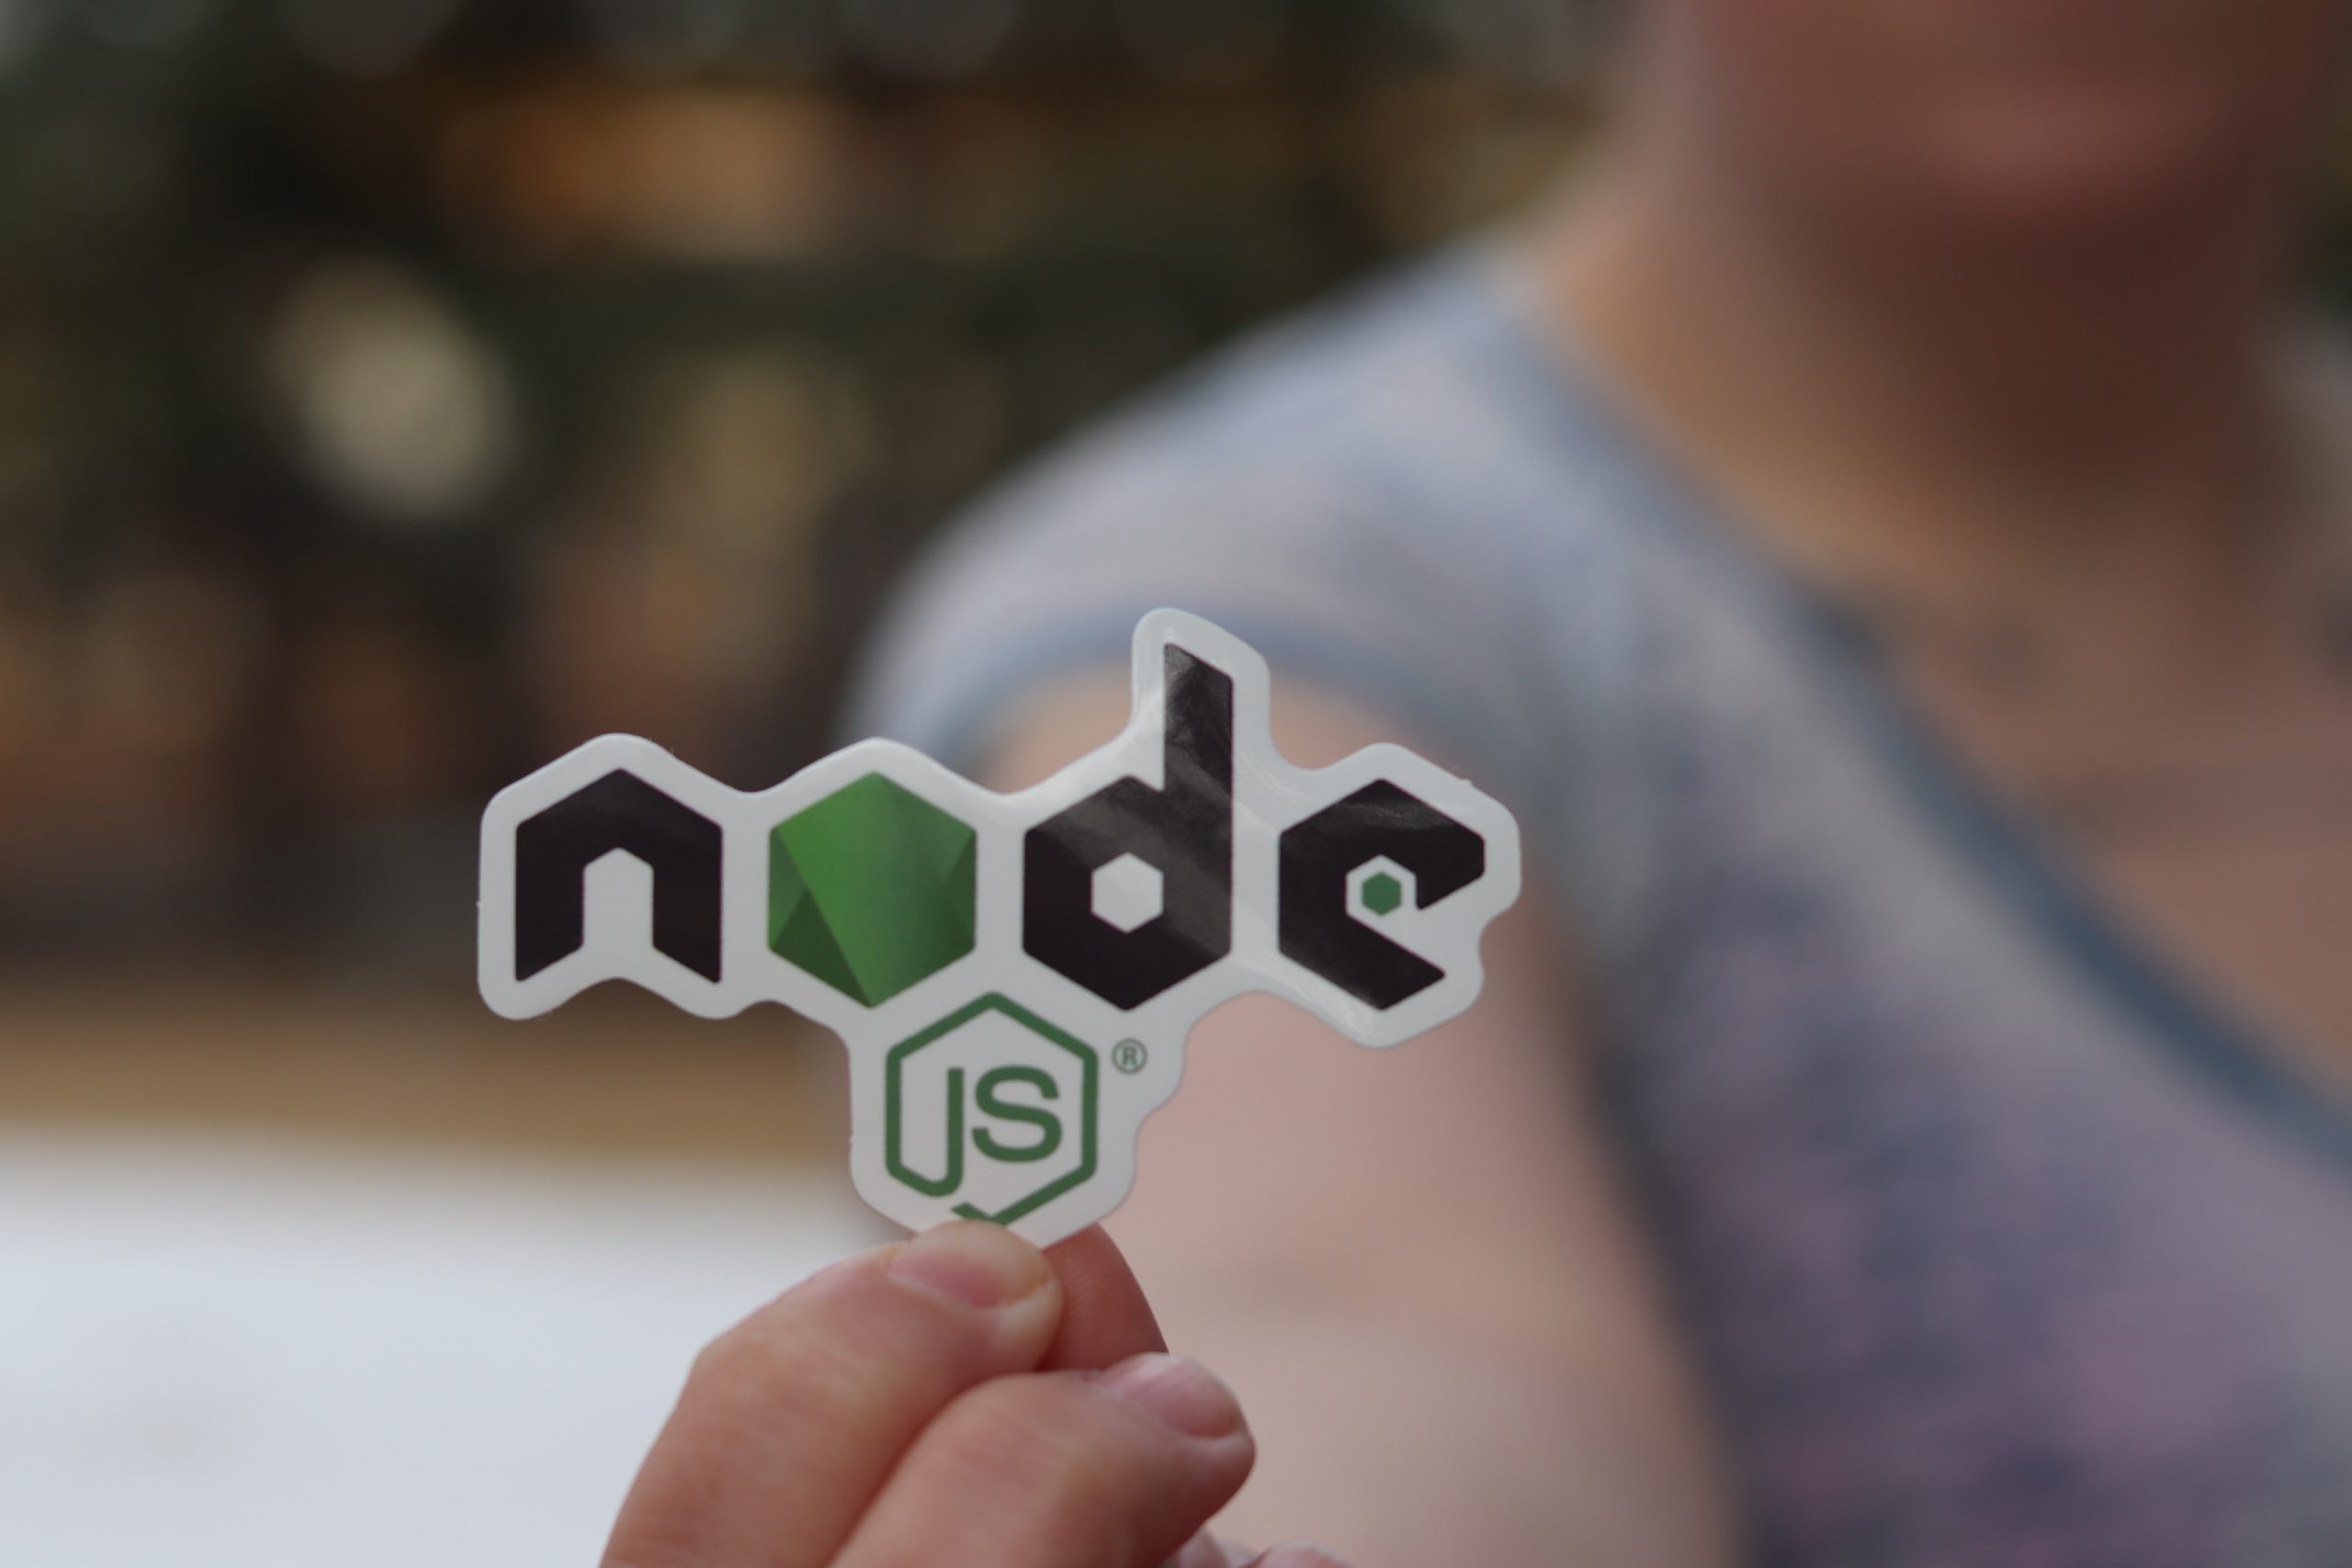 Picture of Node JS language